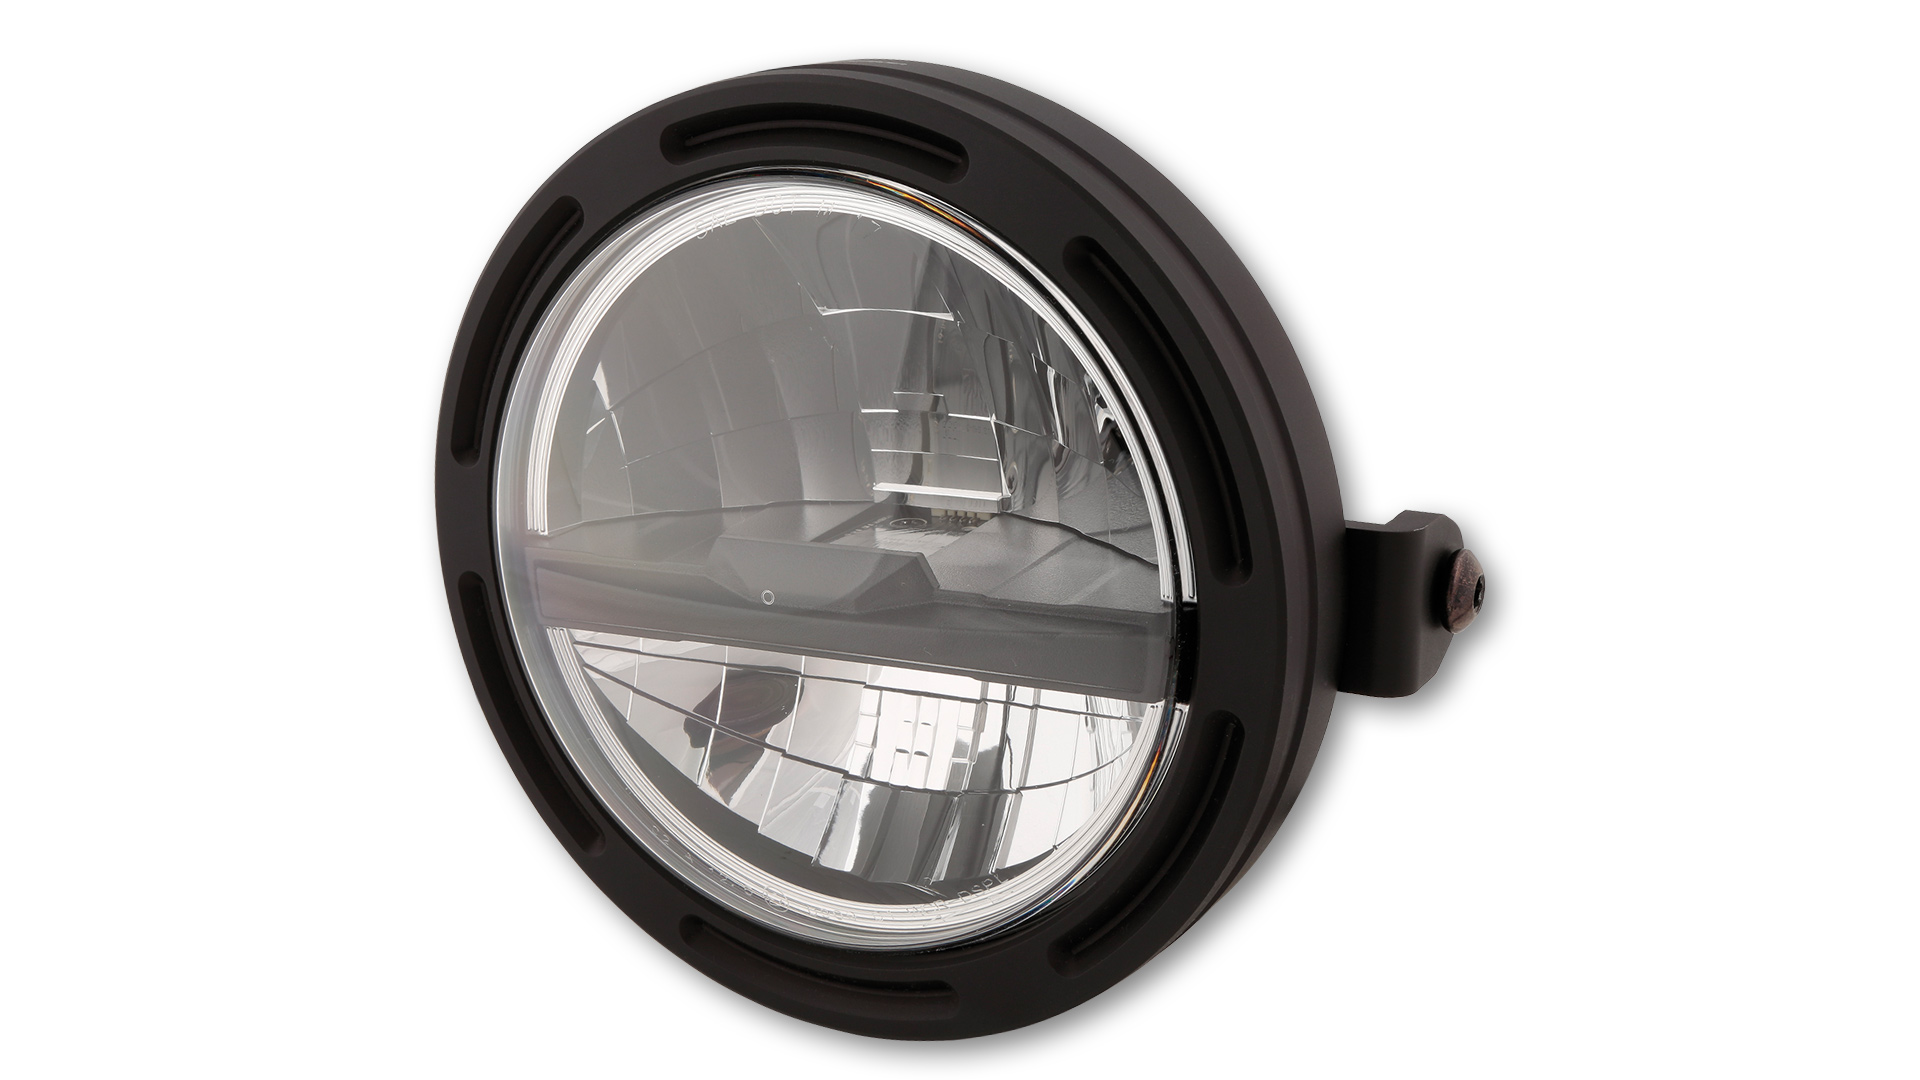 5 3/4 Zoll LED Hauptscheinwerfer FRAME-R2 TYP 5 mit Standlicht Funktion, rund mit verchromtem Reflektor, schwarzer Blende und klarem Glas. Erhältlich mit seitlicher oder unterer Befestigung,  E-geprüft.